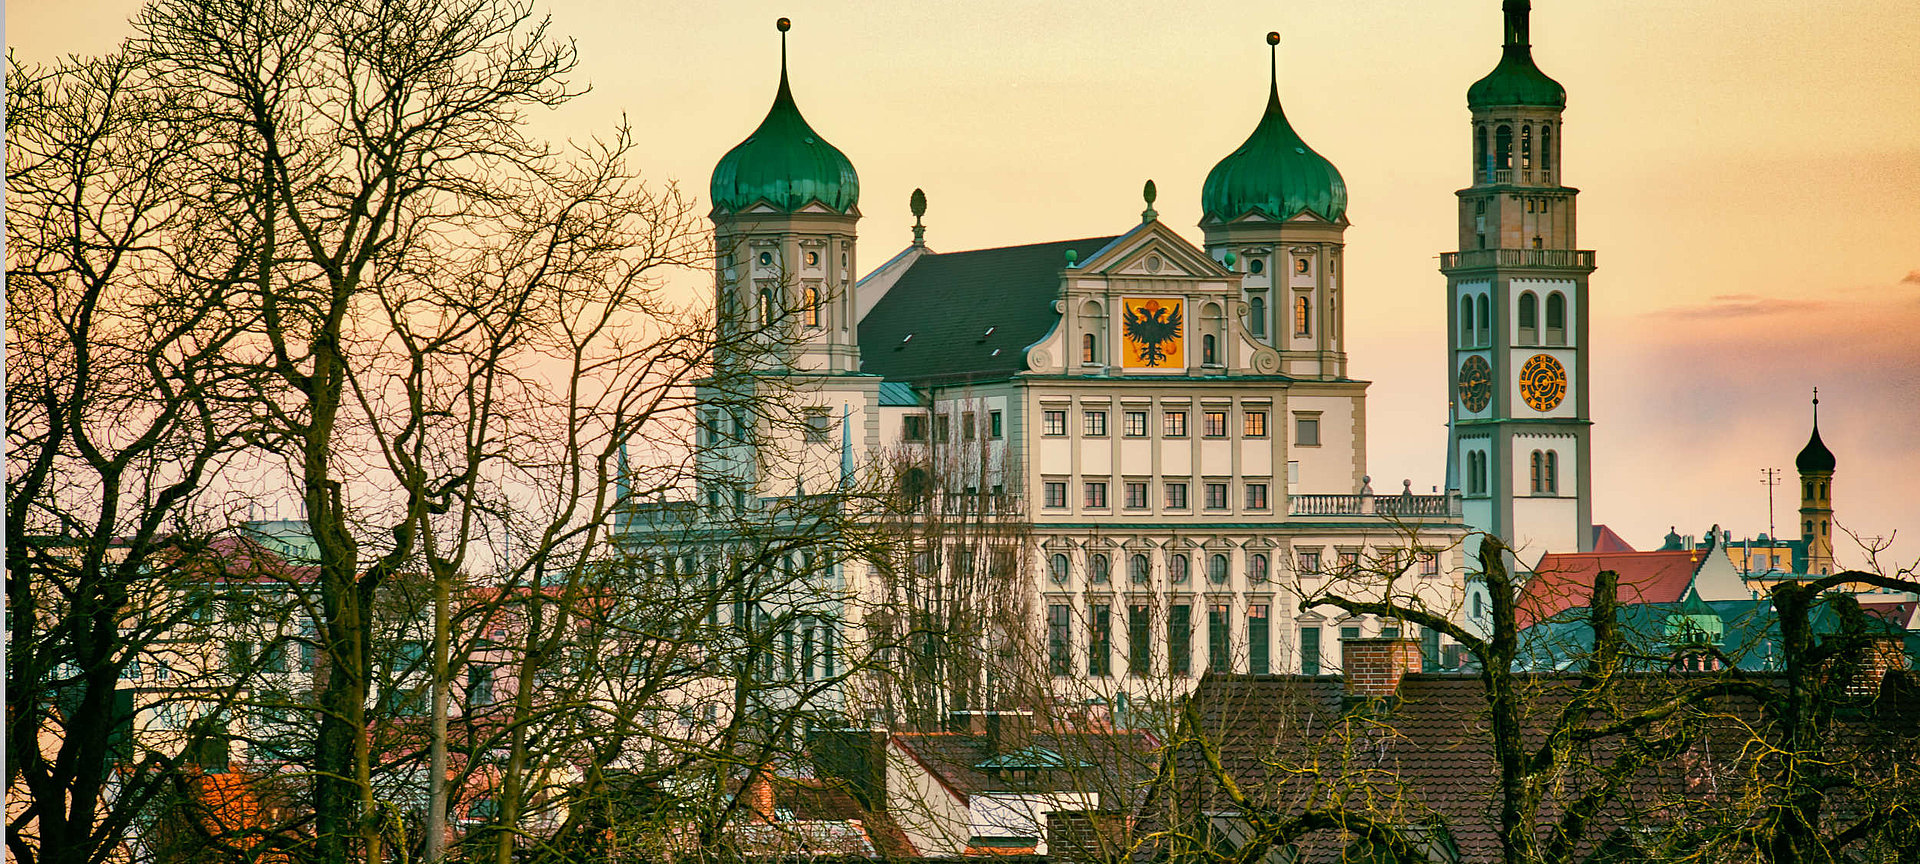 Das Bild zeigt aus der Ferne das Rathaus in Augsburg